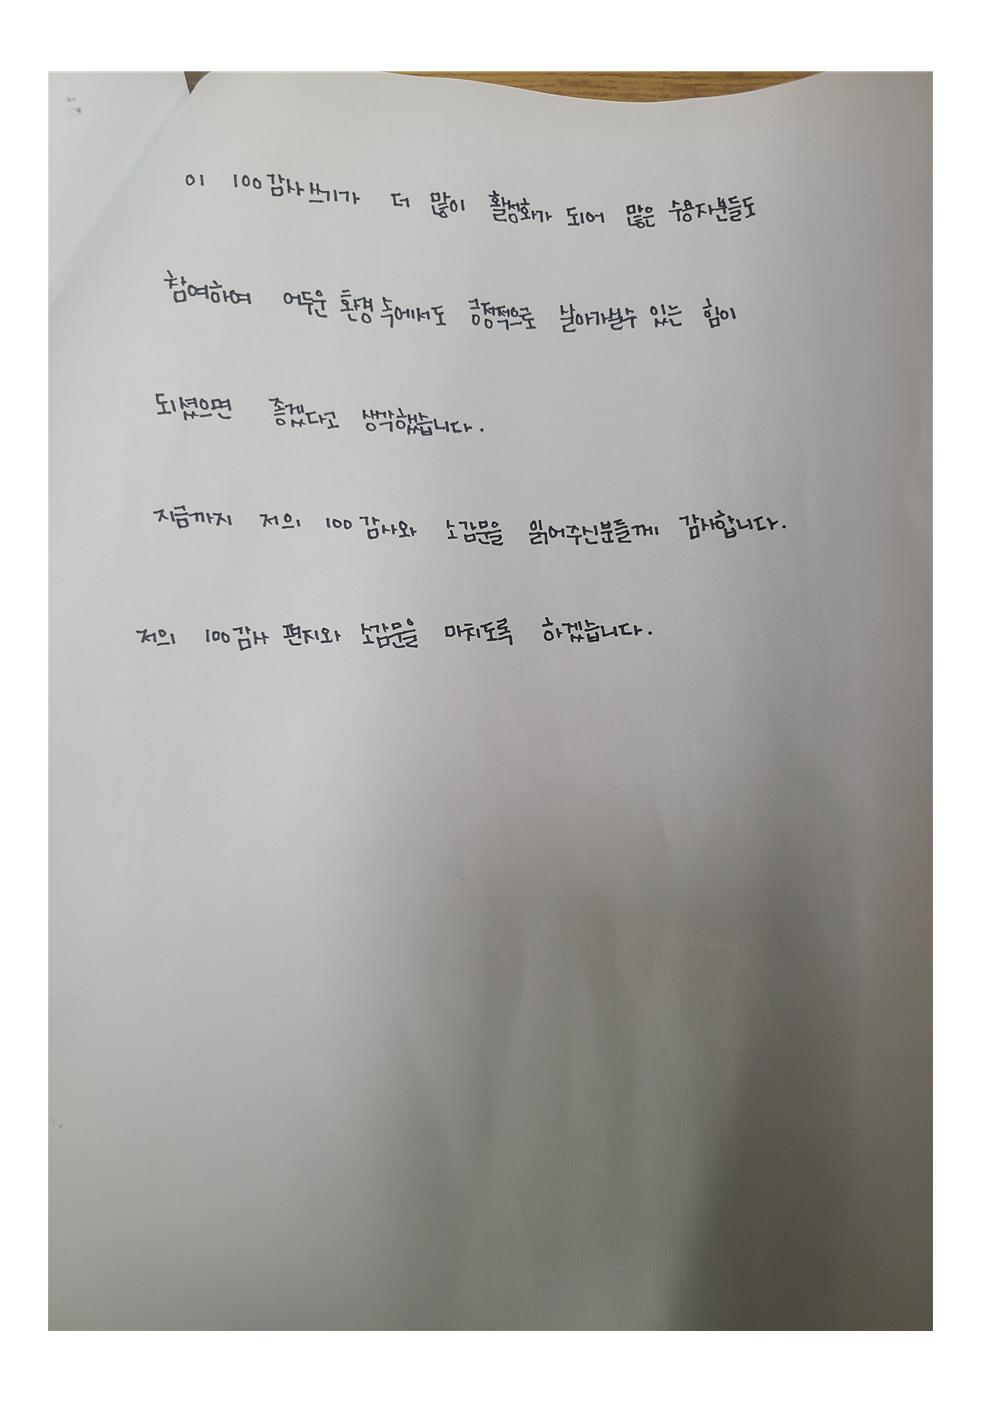 목포교도소 장려상 박00 씨의 감사쓰기 소감문(3쪽).